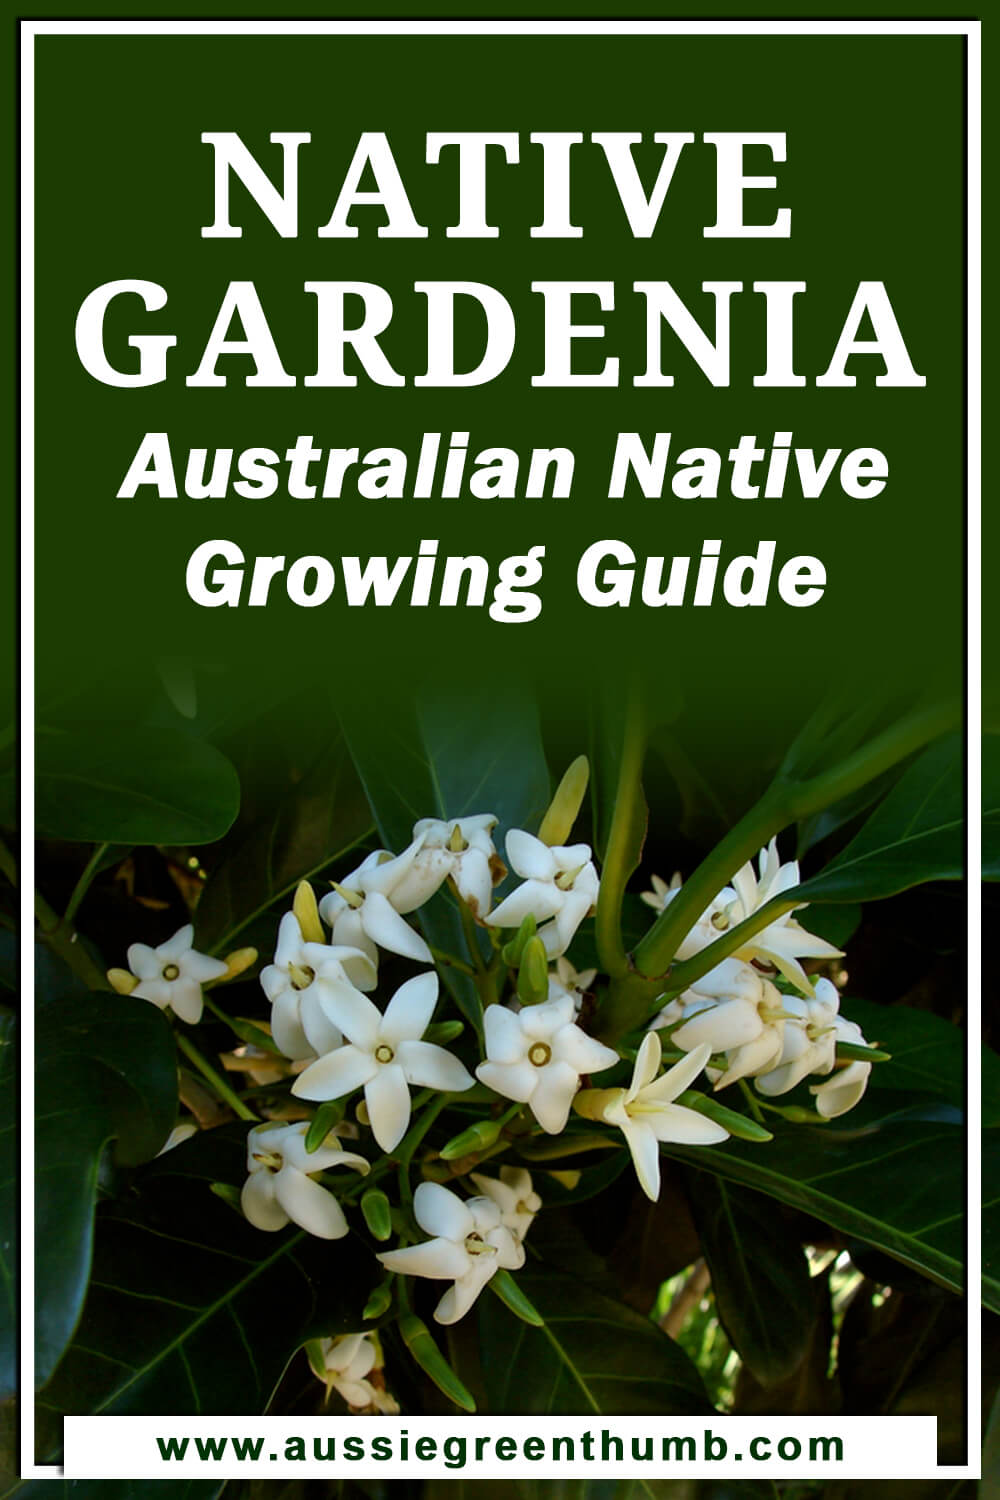 Native Gardenia – Australian Native Growing Guide